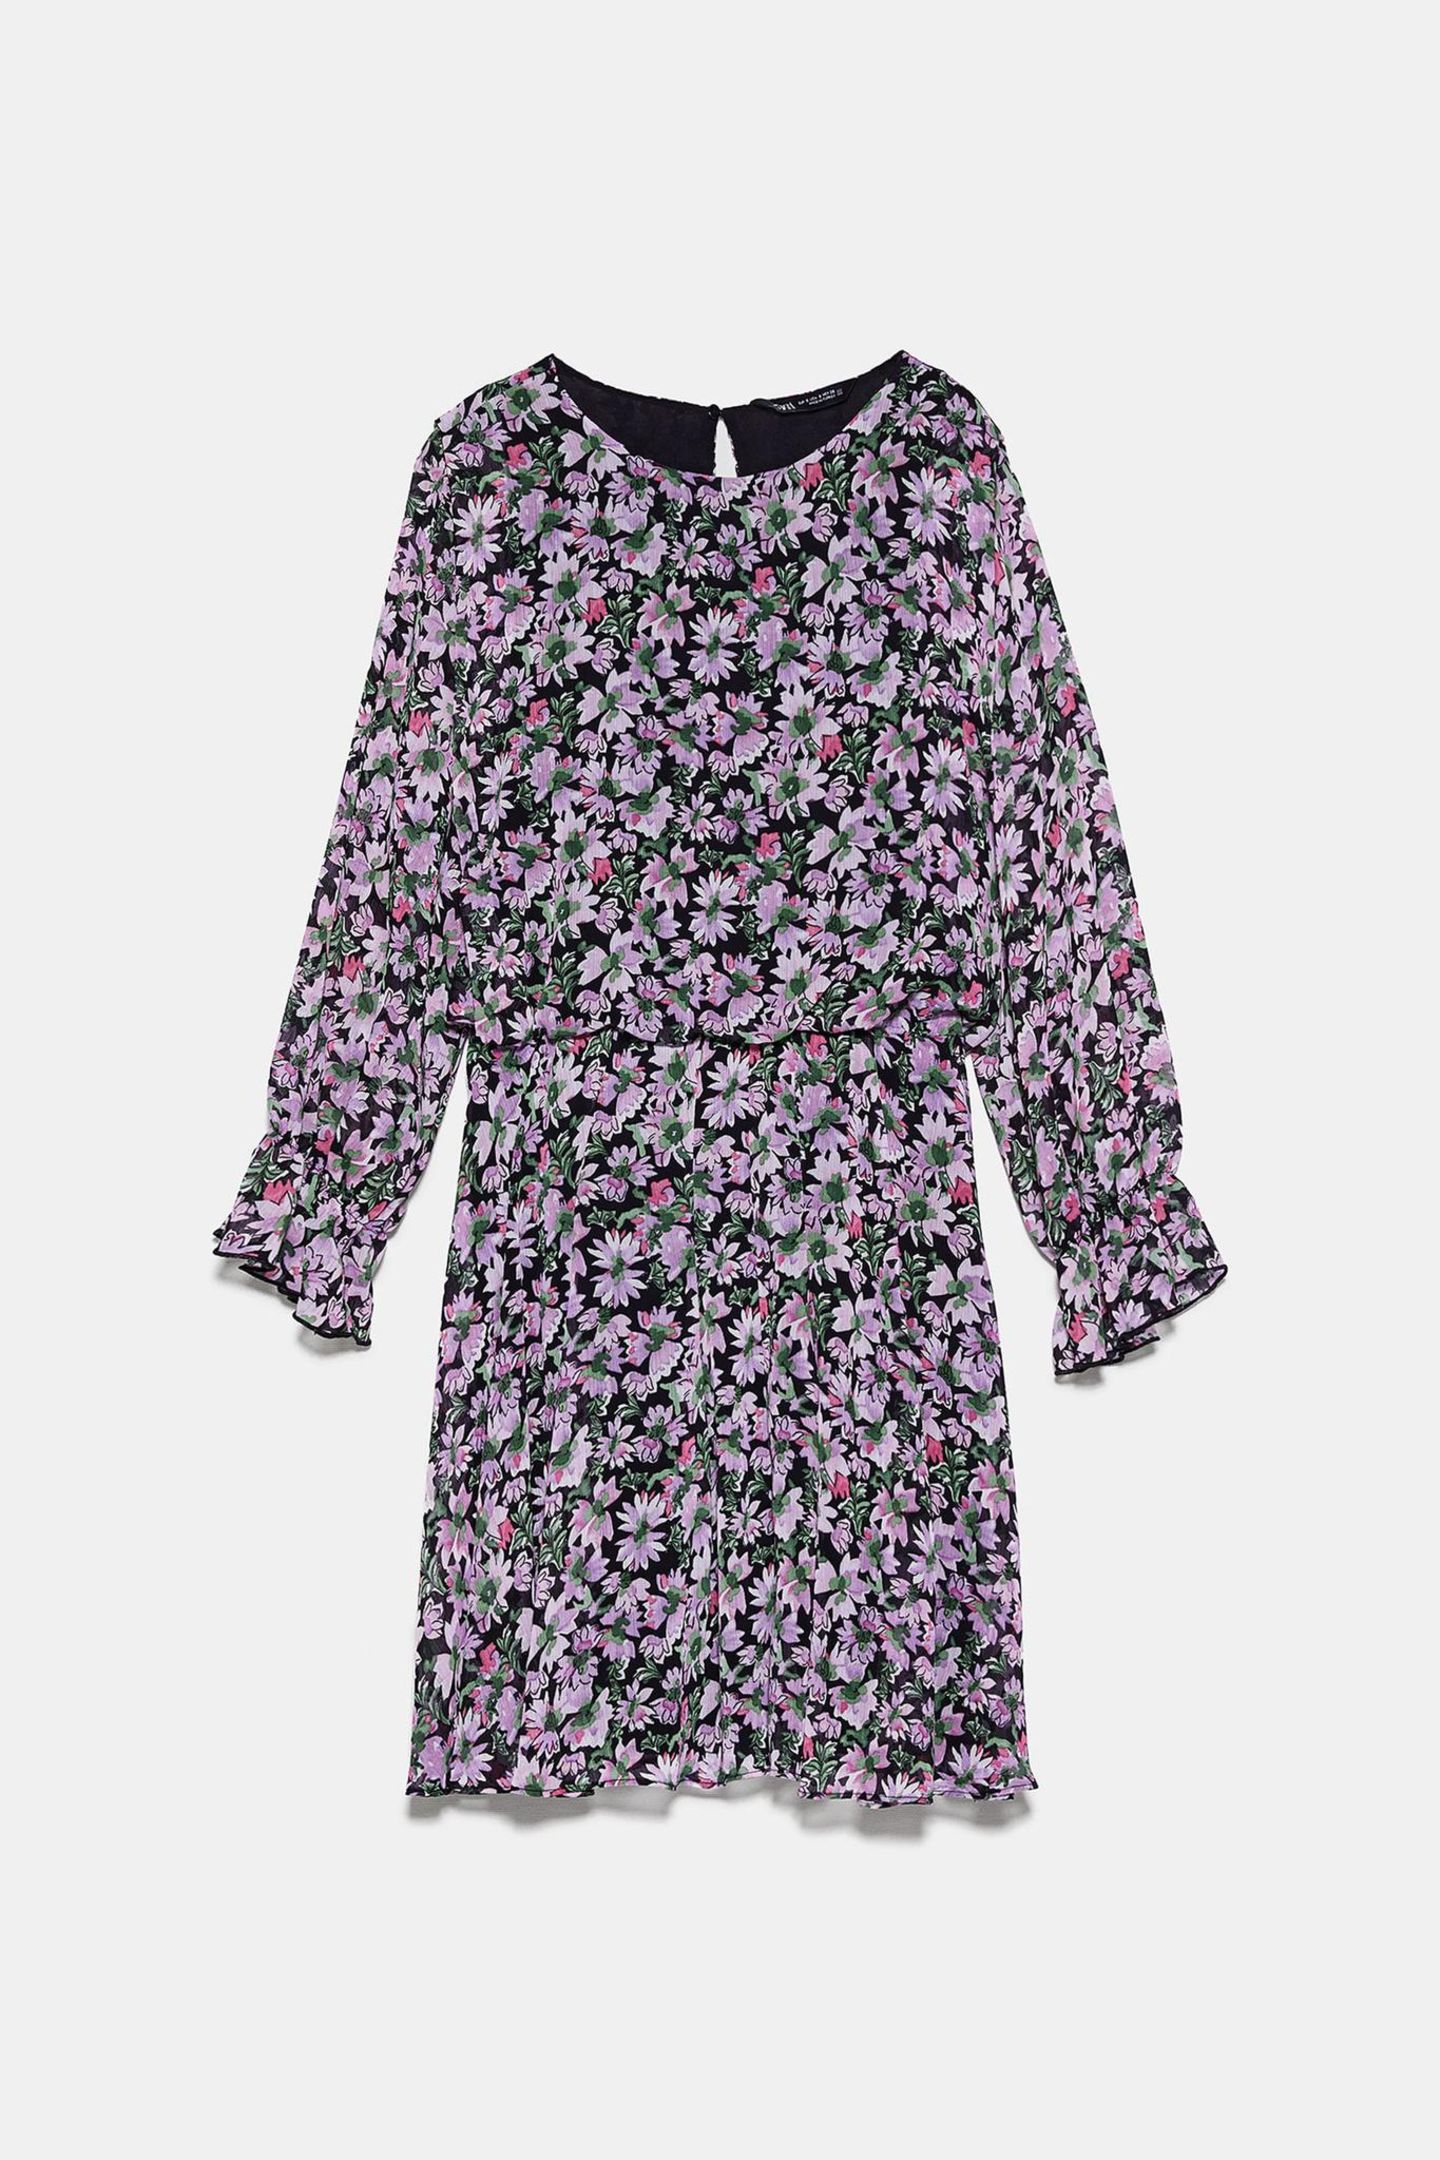 Lilac, beziehungsweise Flieder, ist DIE Trendfarbe 2020 und wir können es jetzt schon kaum erwarten, unseren Kleiderschrank auf Lila umzurüsten. Den Anfang macht dieses zuckersüße Blümchenkleid von Zara. Um 40 Euro.